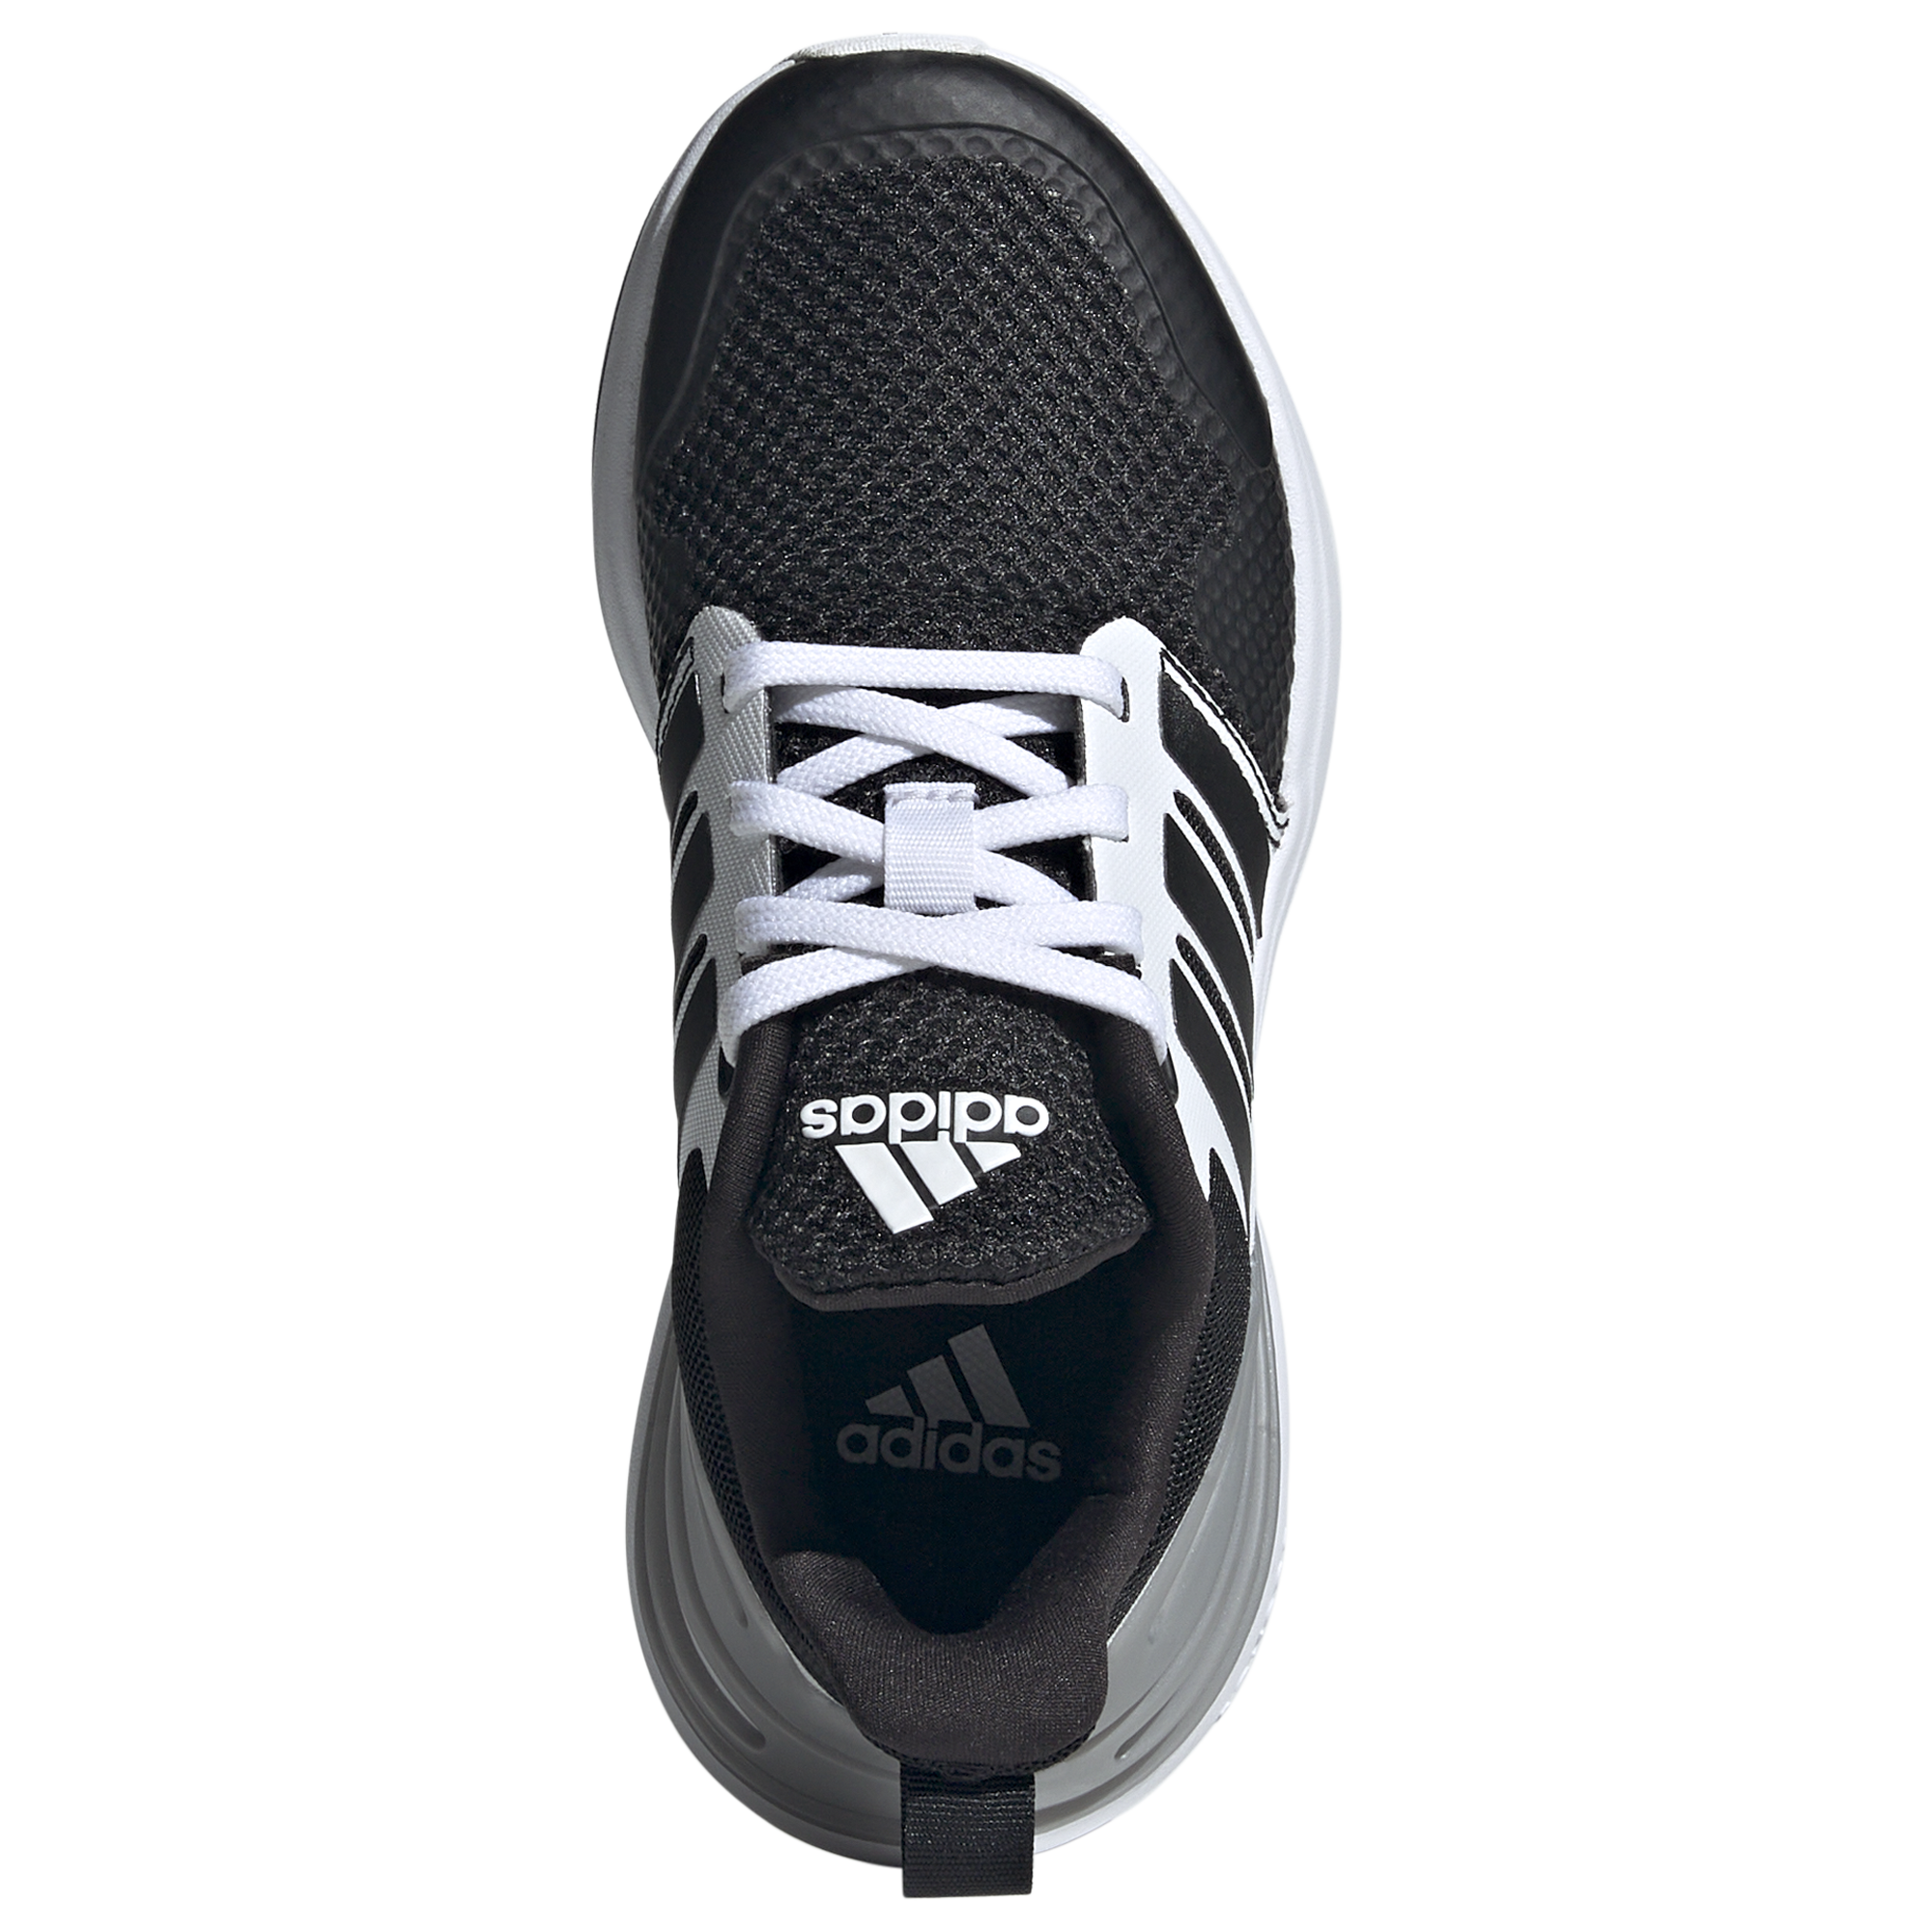 A-L69 (Adidas rapidasport shoes black/white) 42495292